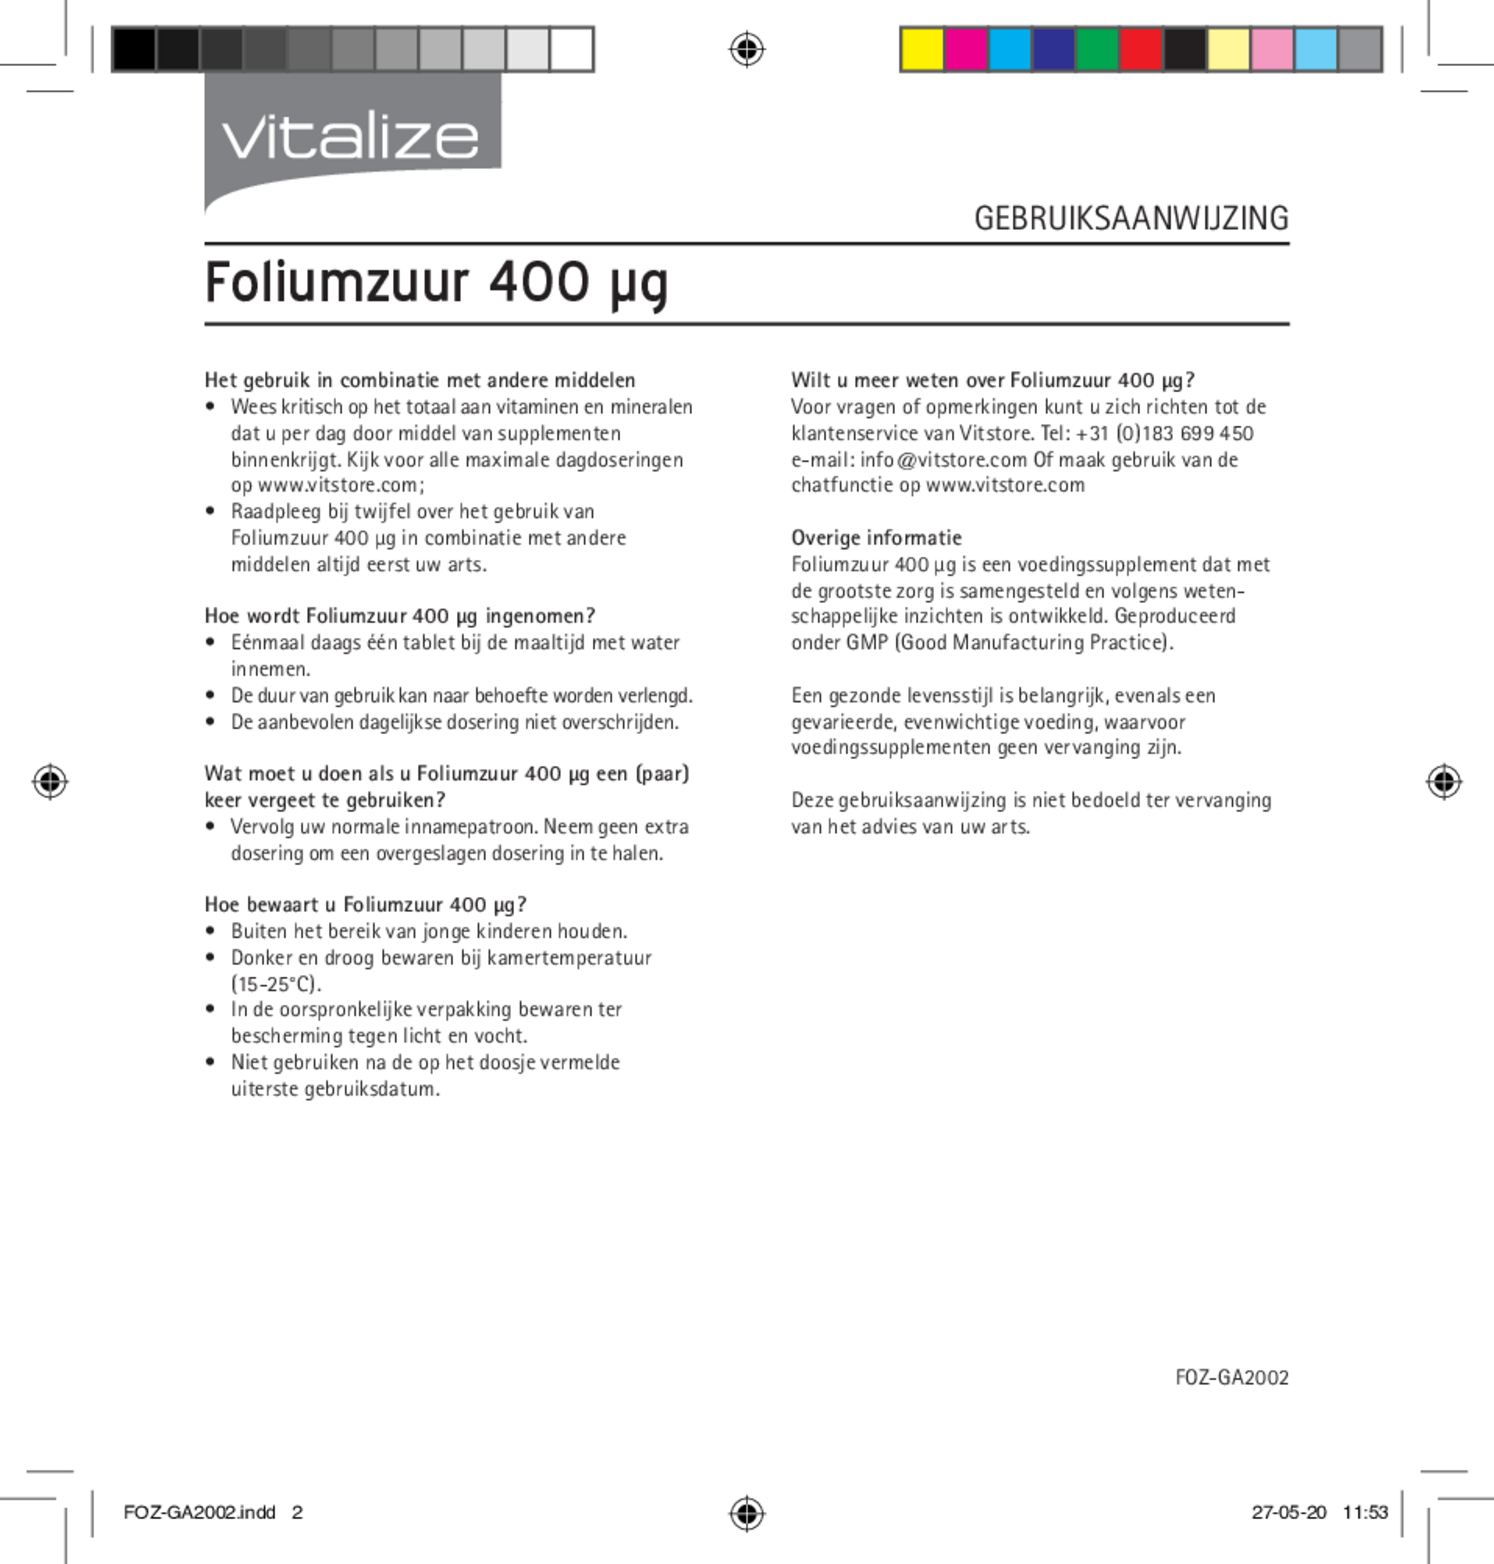 Foliumzuur 400mcg Tabletten afbeelding van document #2, gebruiksaanwijzing